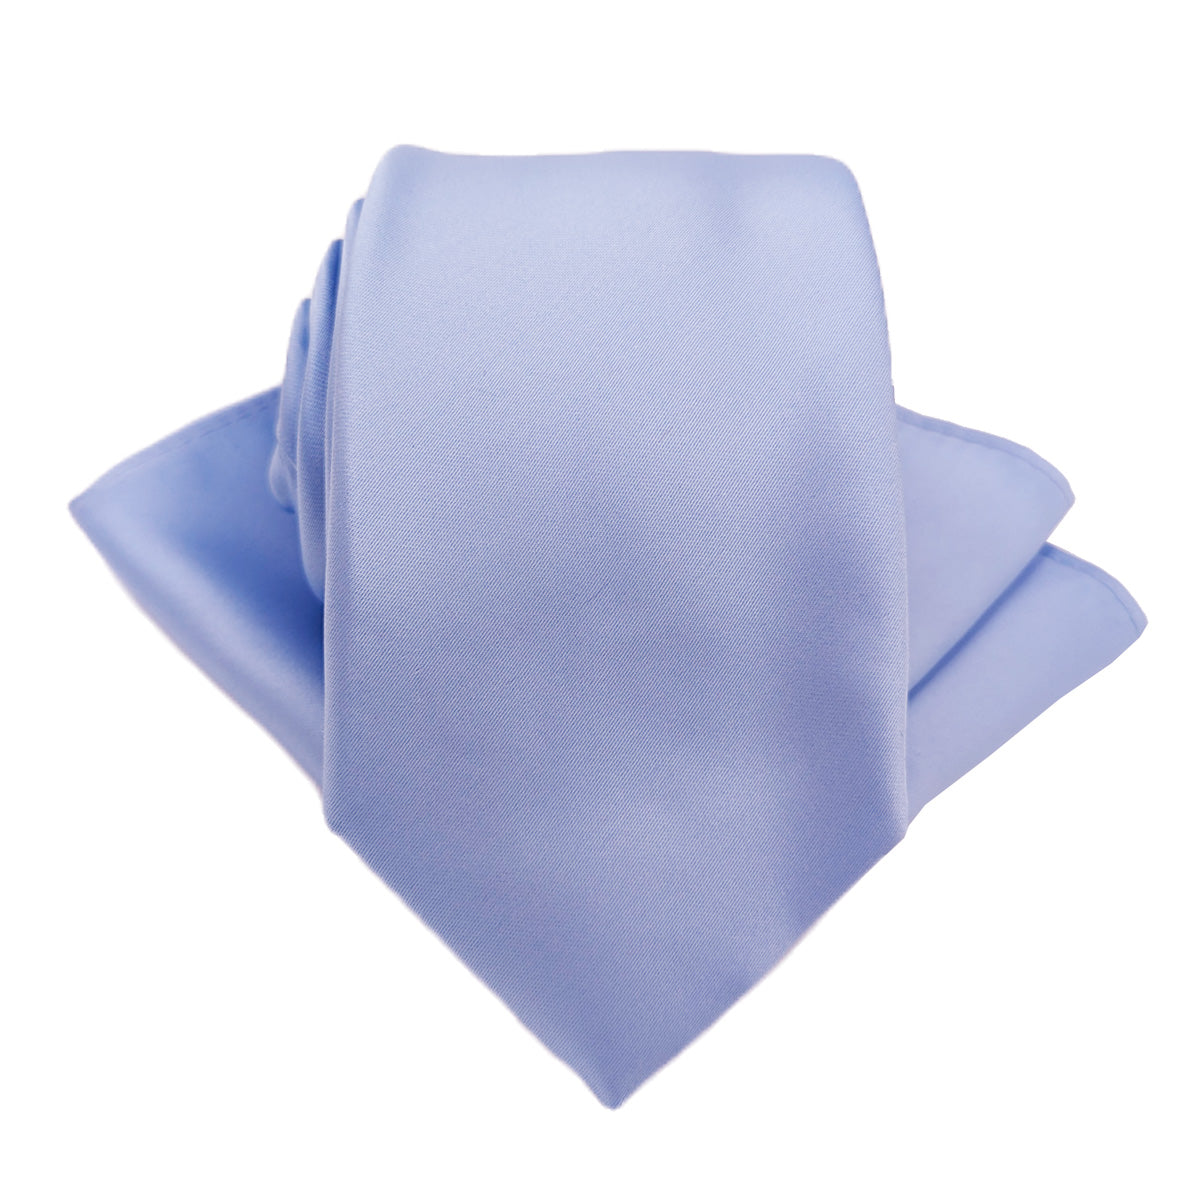 Pale Blue Wedding Tie